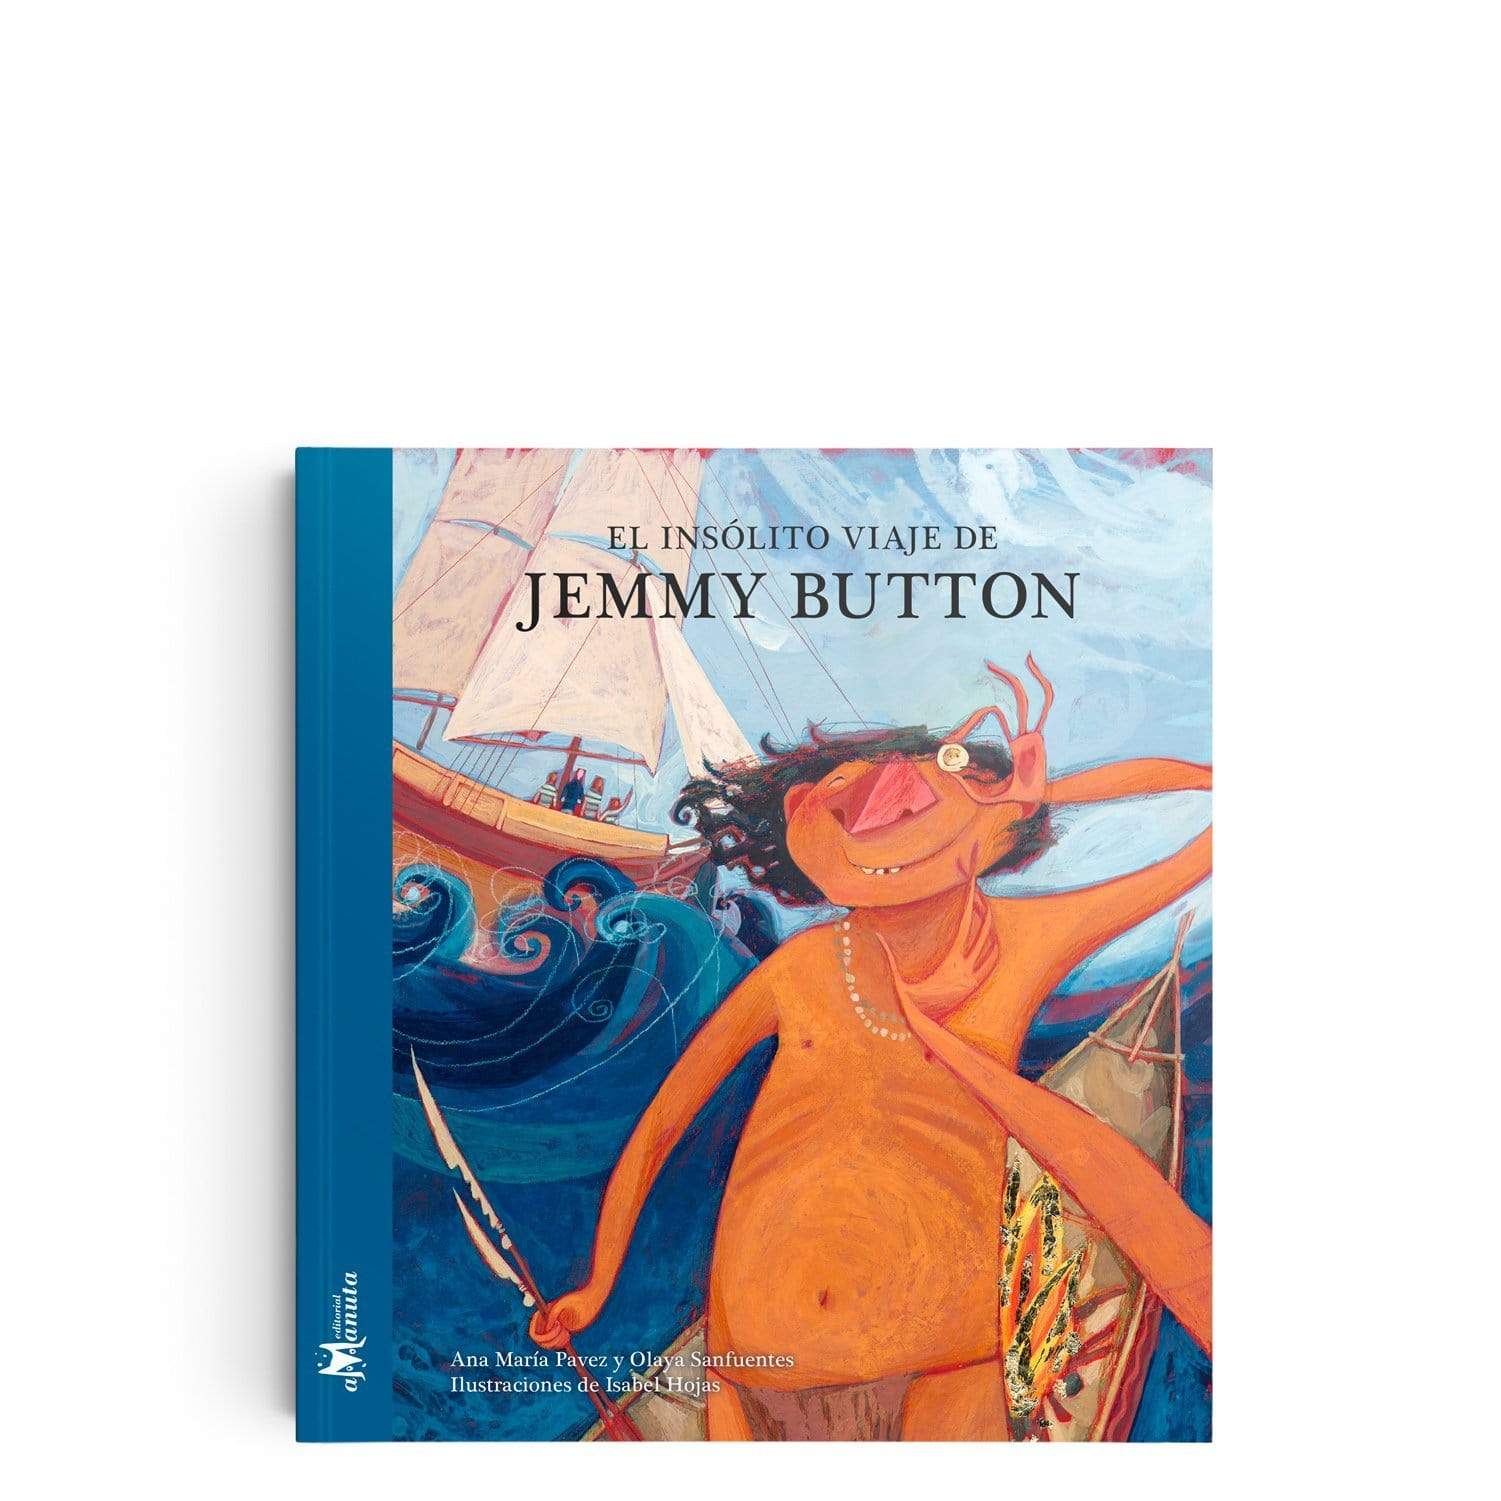 Libro "El insólito viaje de Jemmy Button"